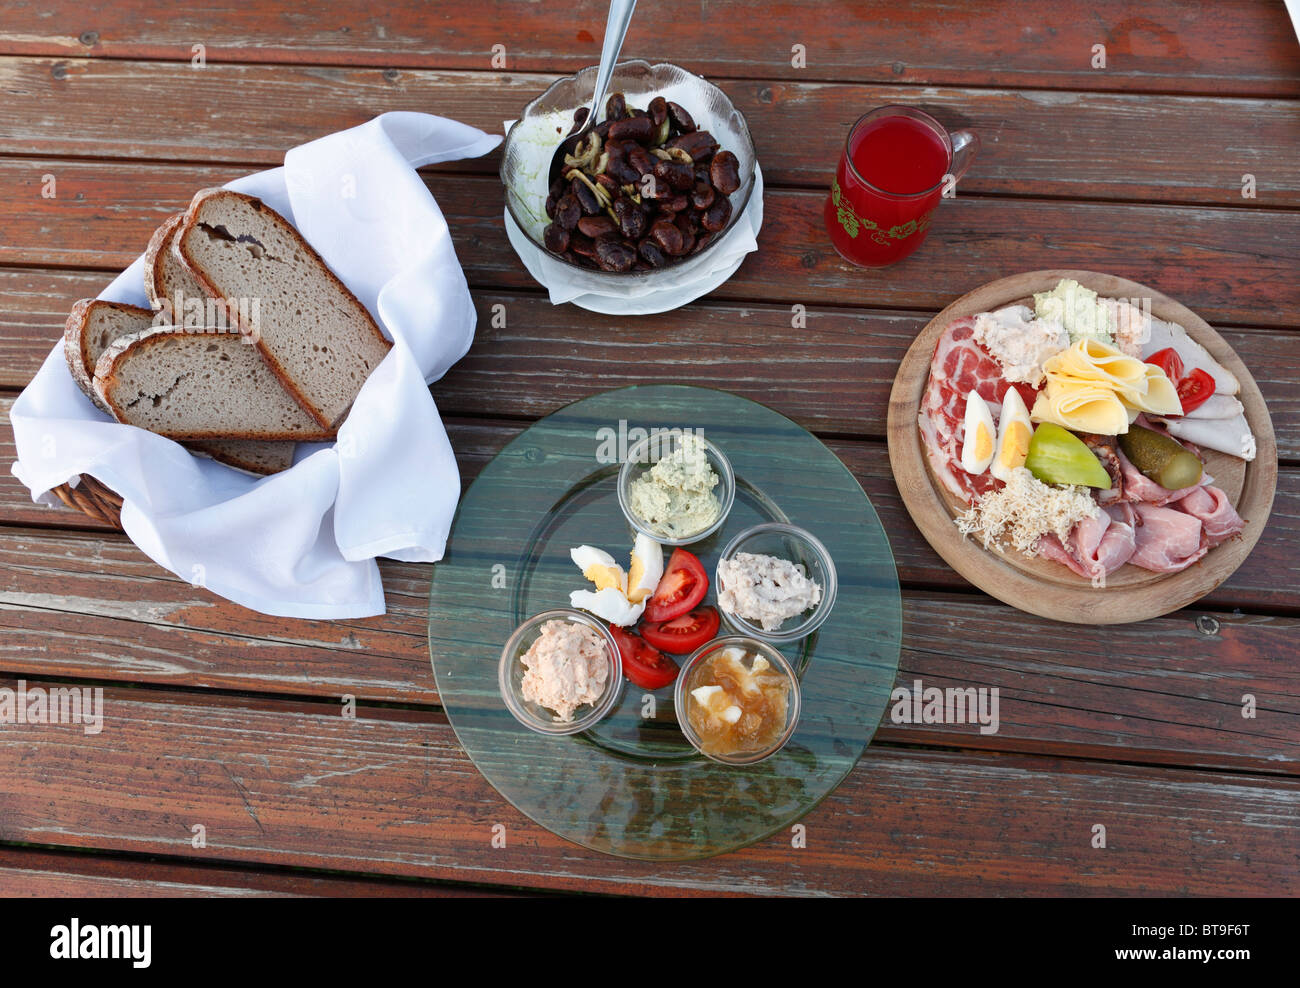 Zünftige Jause, Brot und ein Teller mit verschiedenen Aufstrichen, Brettljause, eine Platte mit Aufschnitt, steirische Scarlet Stangenbohnen und Stockfoto